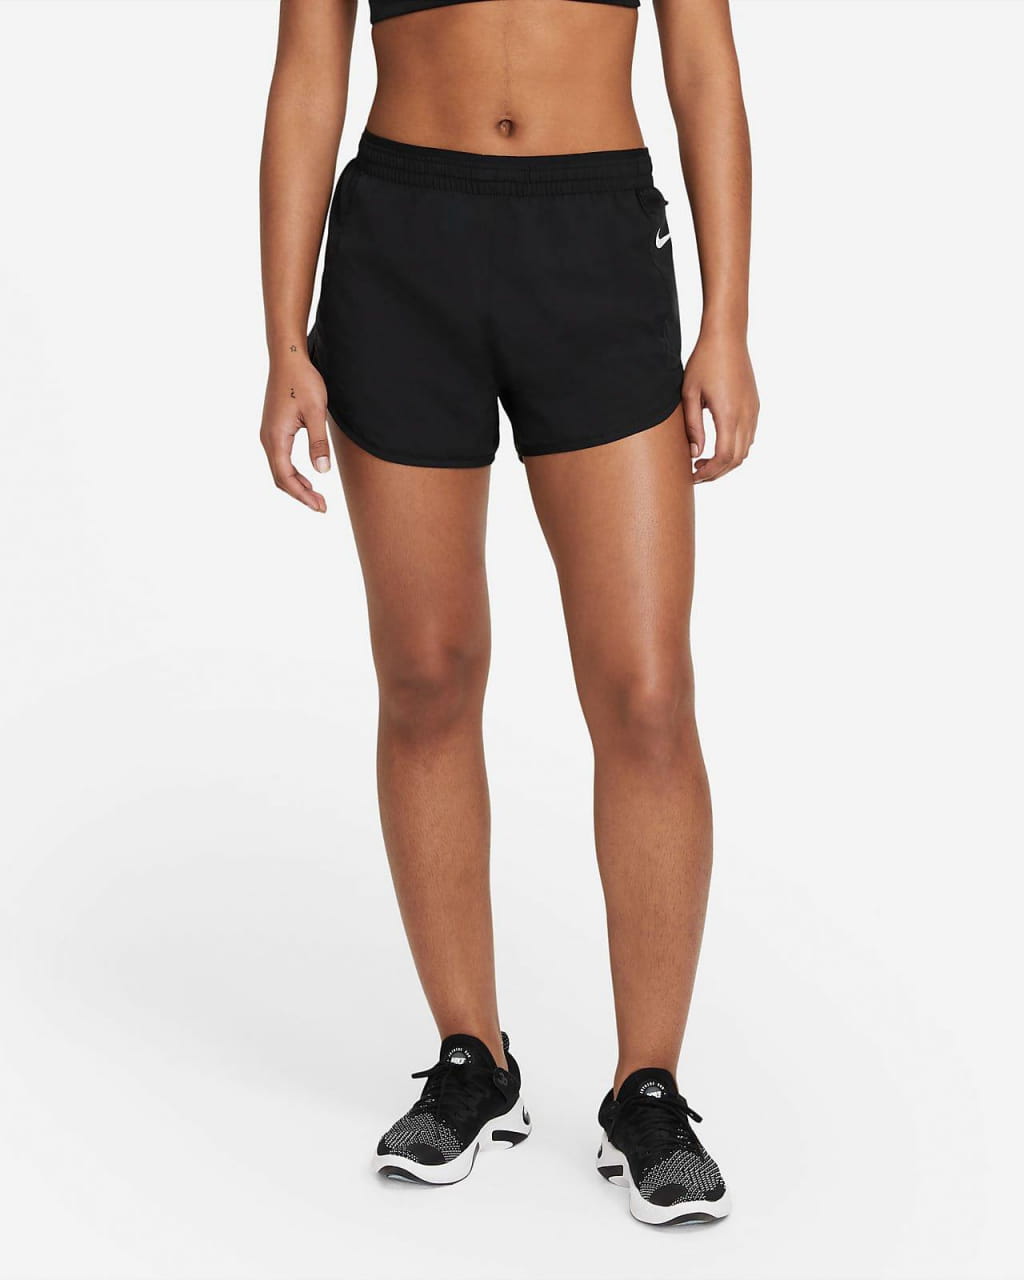 Ženske tekaške hlače Nike Tempo Luxe Short 3in